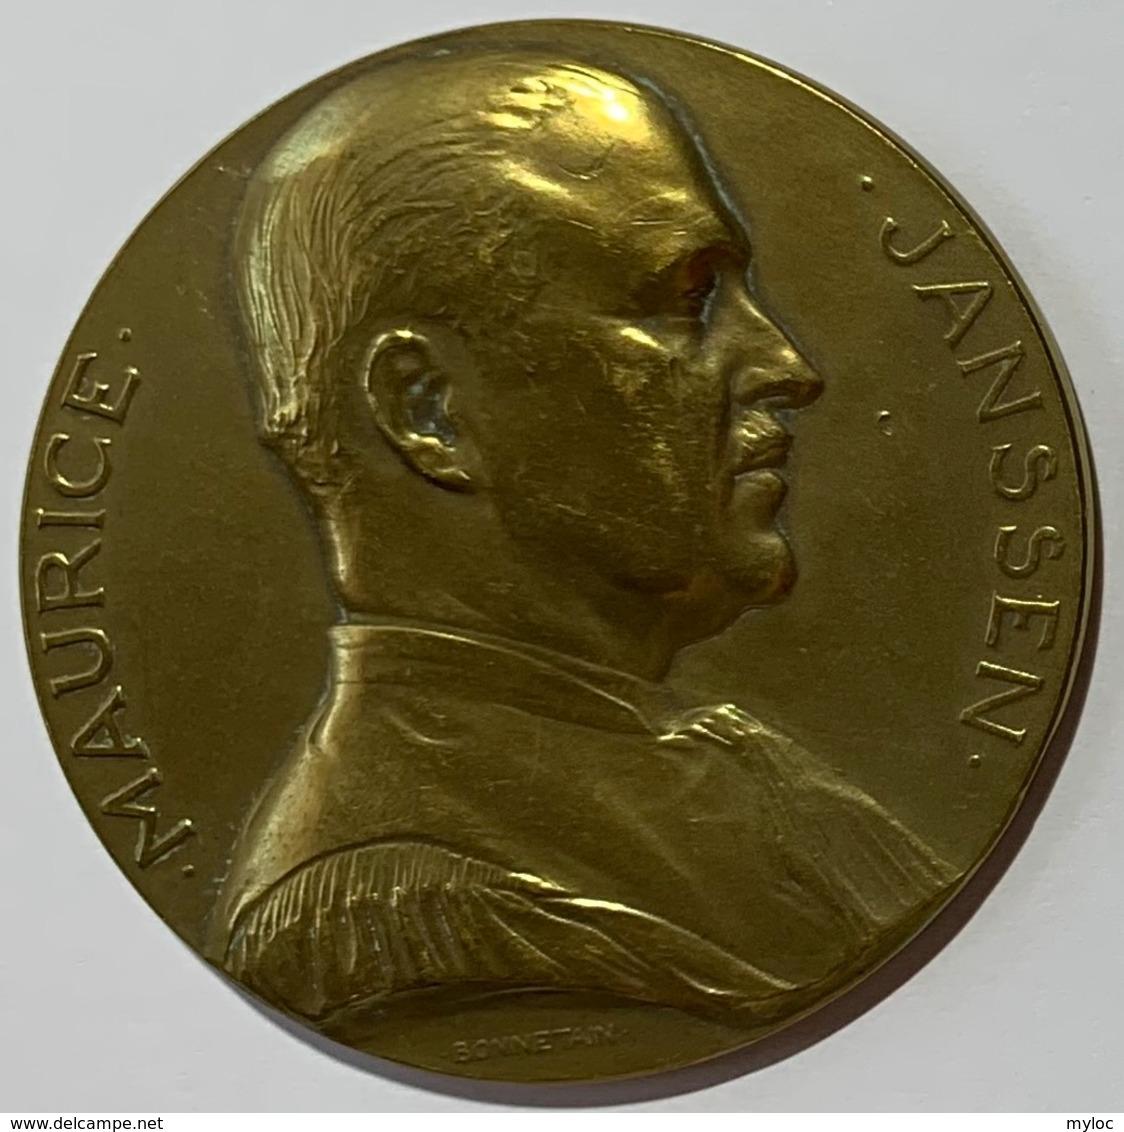 Médaille Bronze. Maurice Janssen. A Mautice Janssen. Ses Amis Et Collaborateurs. 1905-1930. Armand Bonnetain. - Professionals / Firms